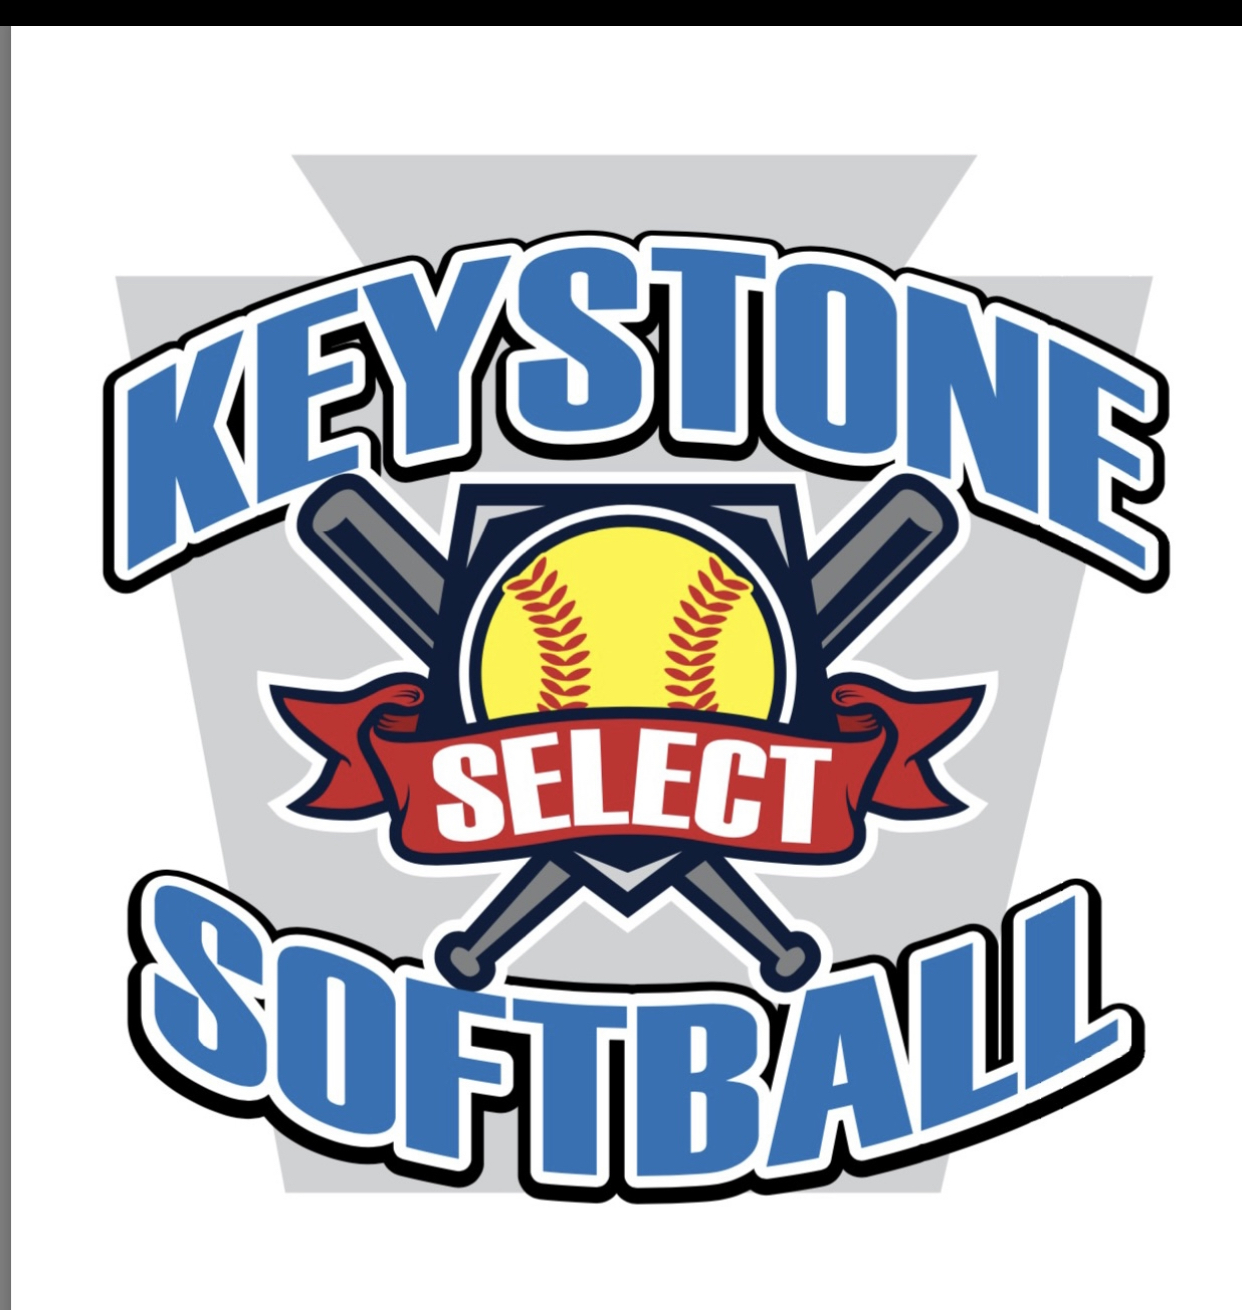 Keystone Select Softball Pride of the Poconos Tournament Logo